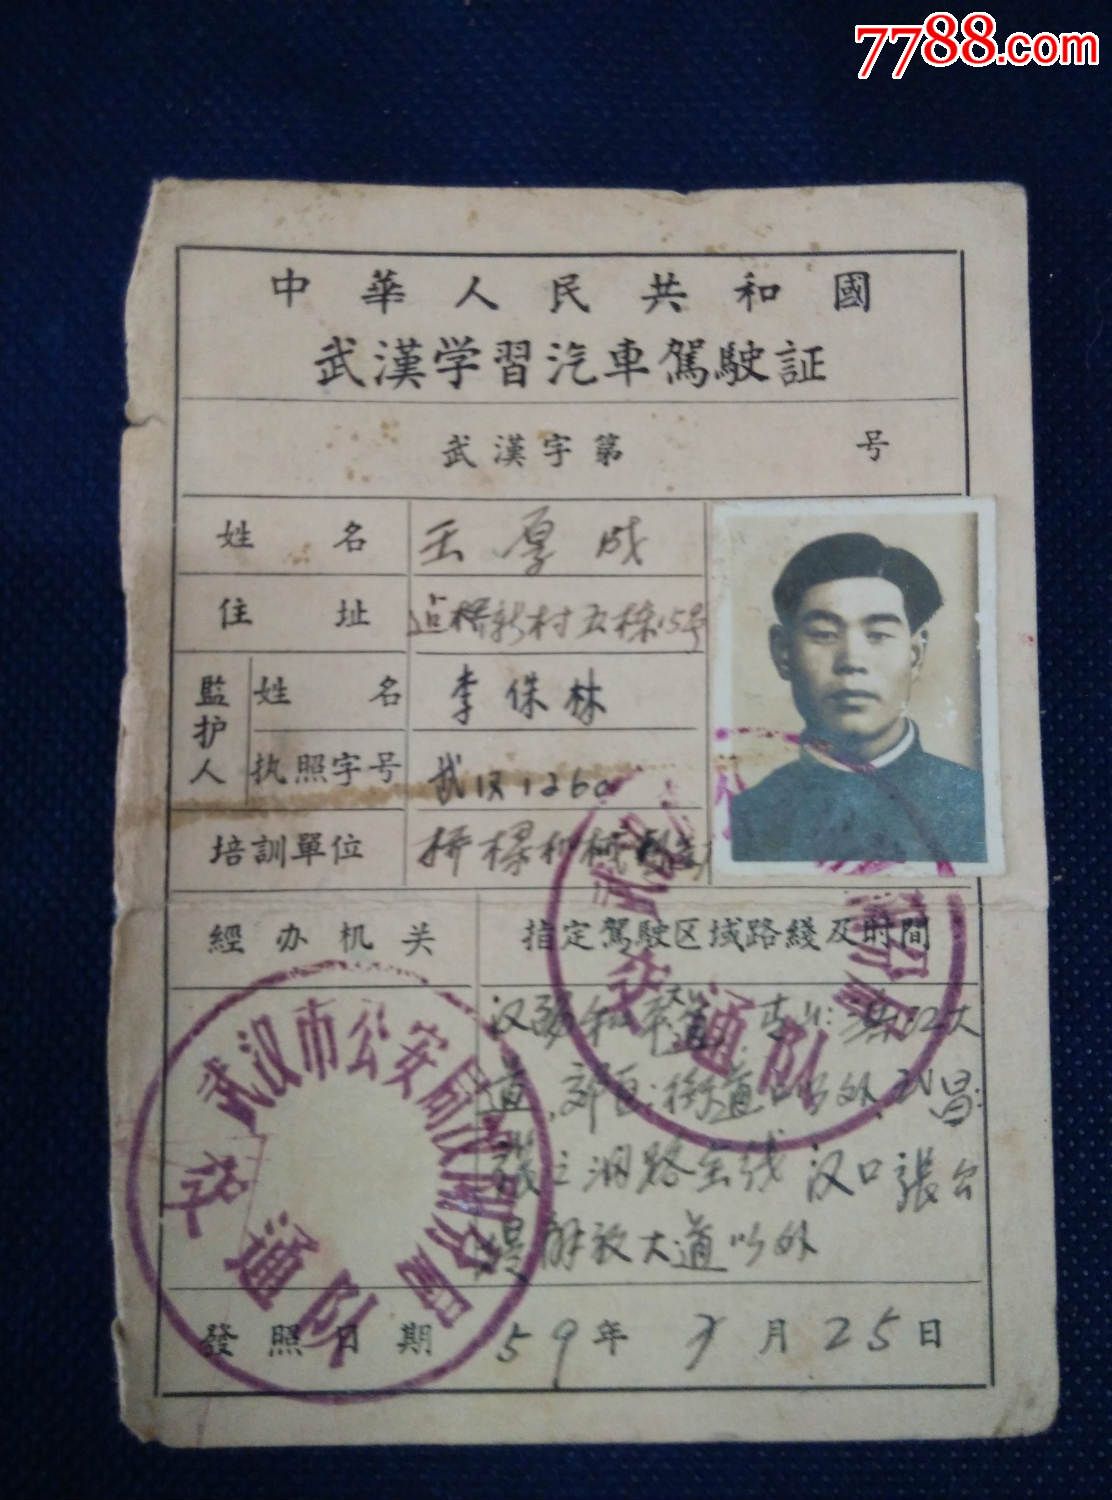 驾驶证【武汉学习汽车驾驶证】59年-价格:148